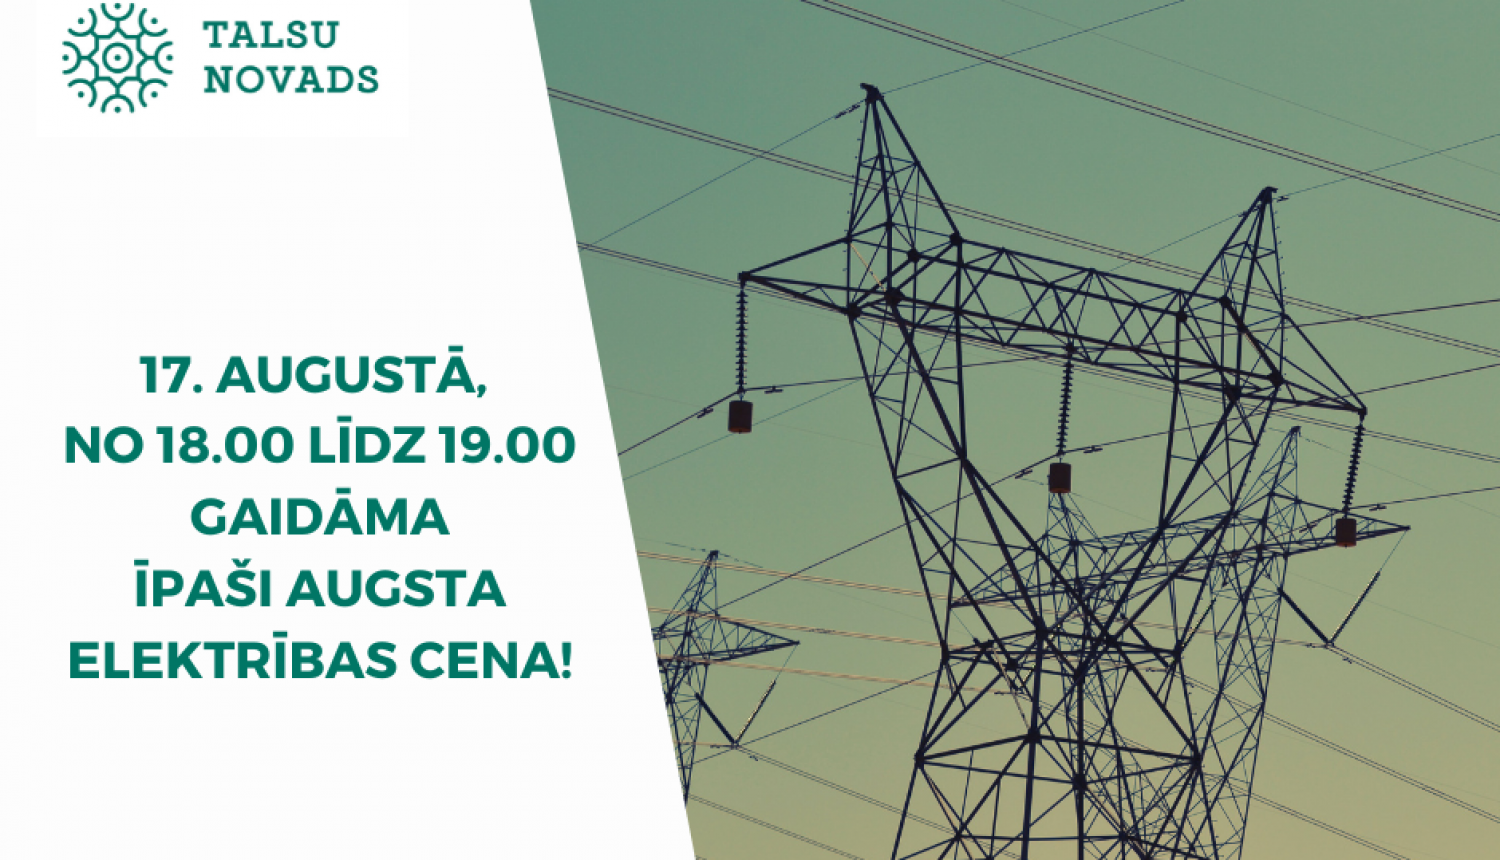 Šodien no plkst. 18.00 līdz 19.00 gaidāma īpaši augsta elektrības cena – 4.00 €/kWh informē Elektrum.